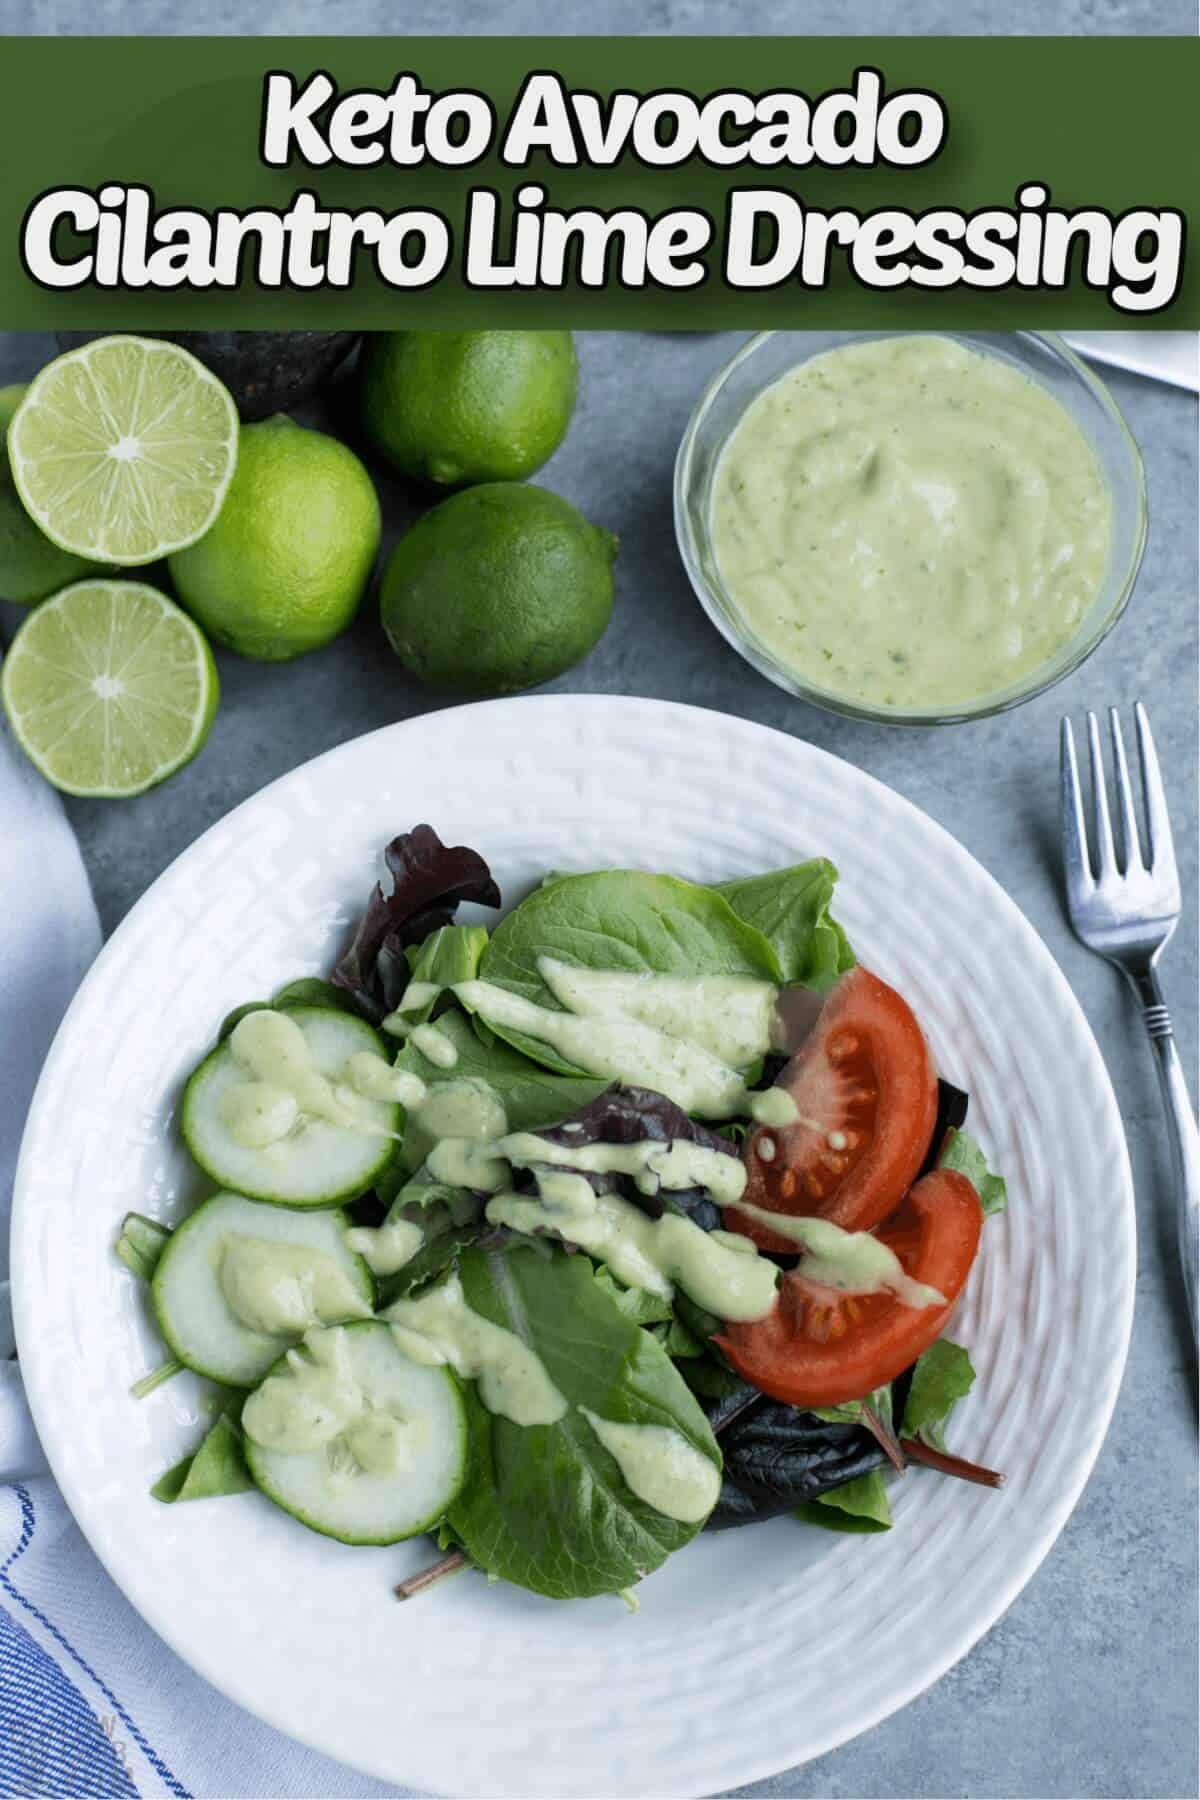 avocado cilantro lime dressing recipe